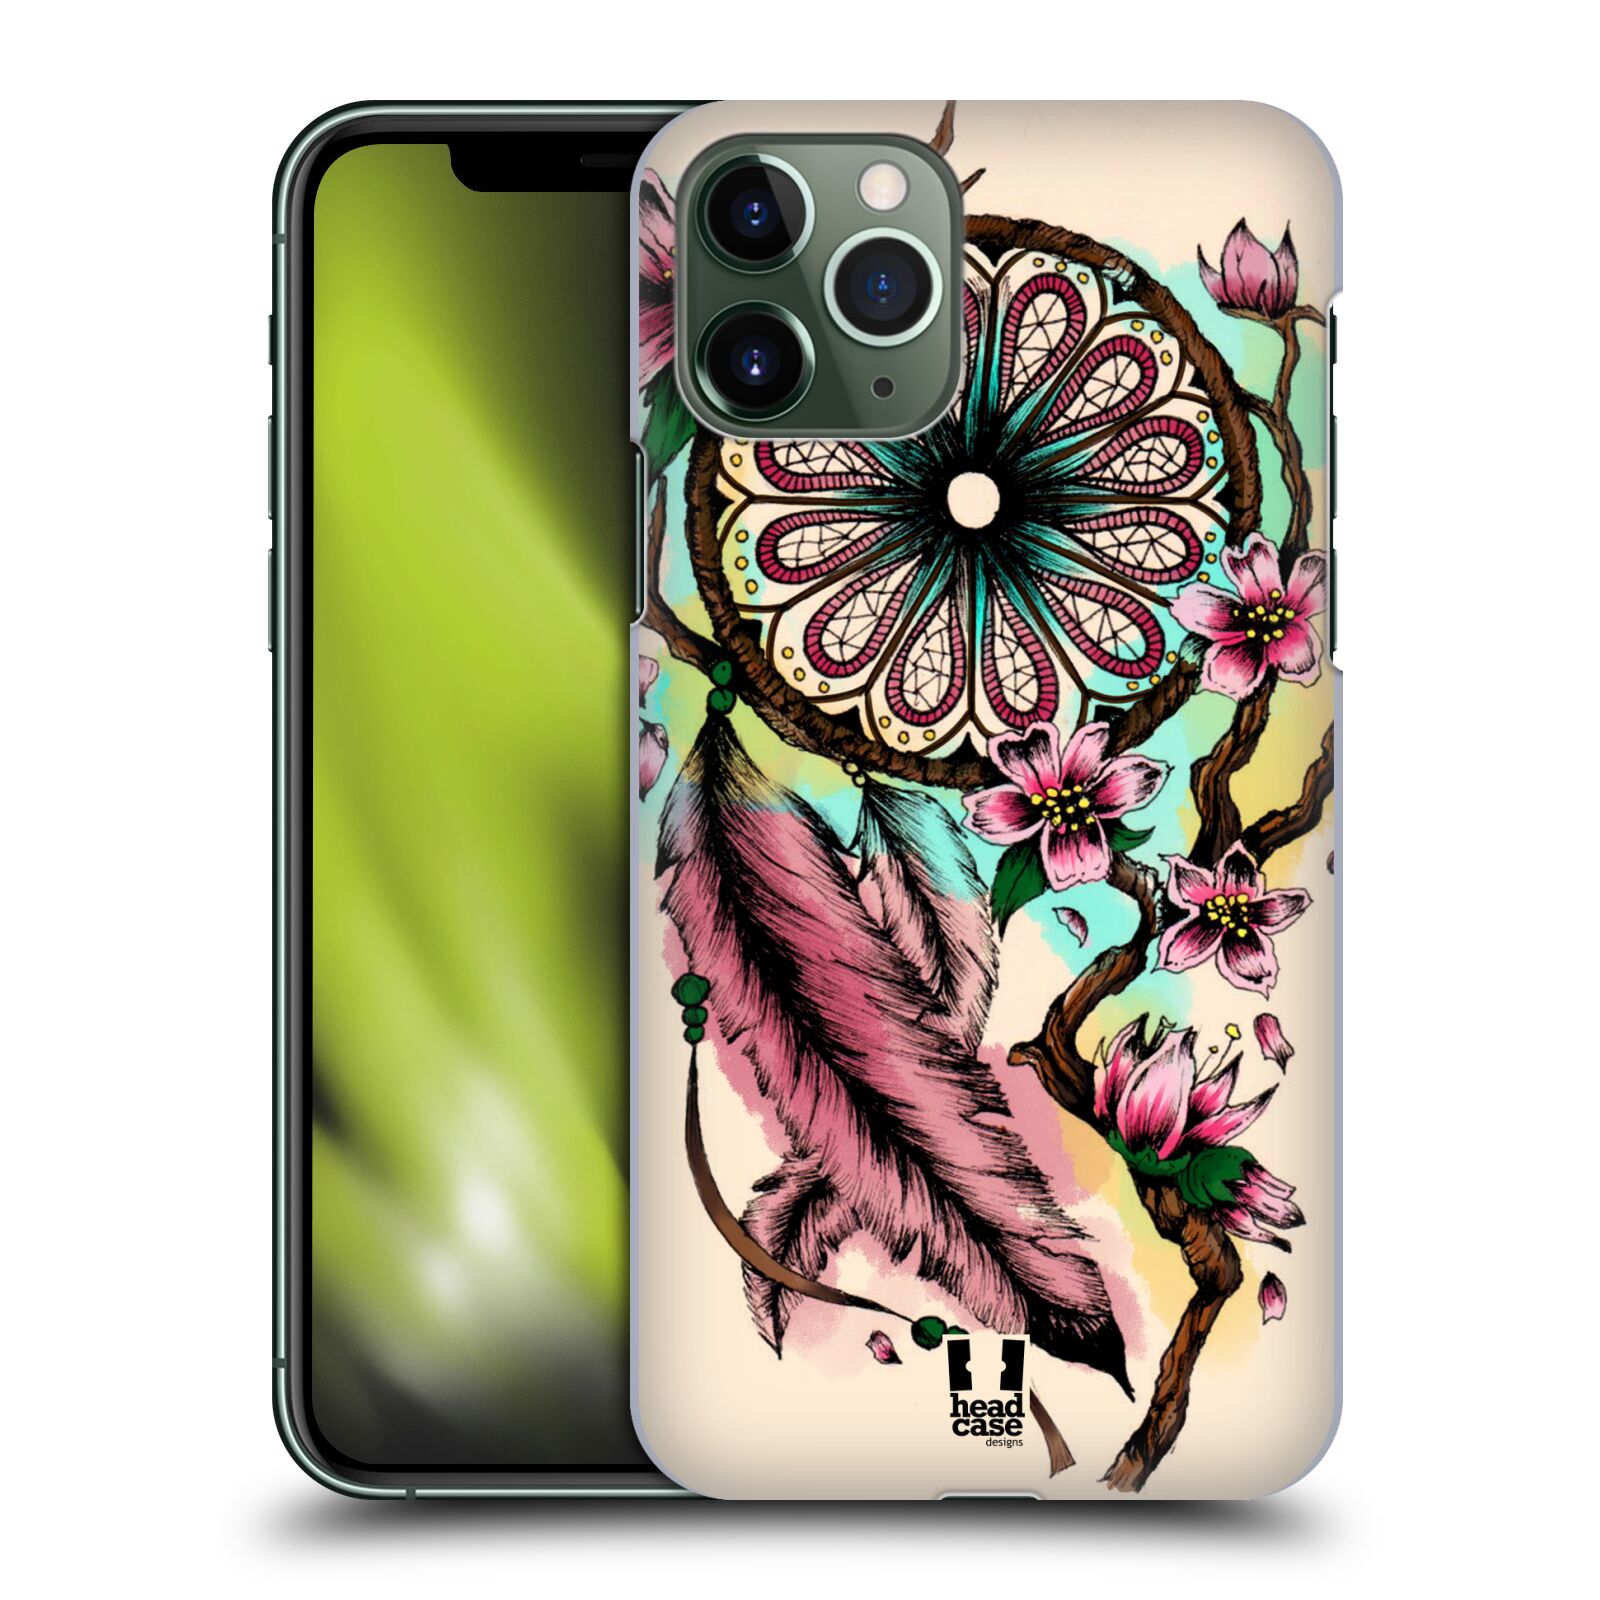 Pouzdro na mobil Apple Iphone 11 PRO - HEAD CASE - vzor Květy lapač snů růžová